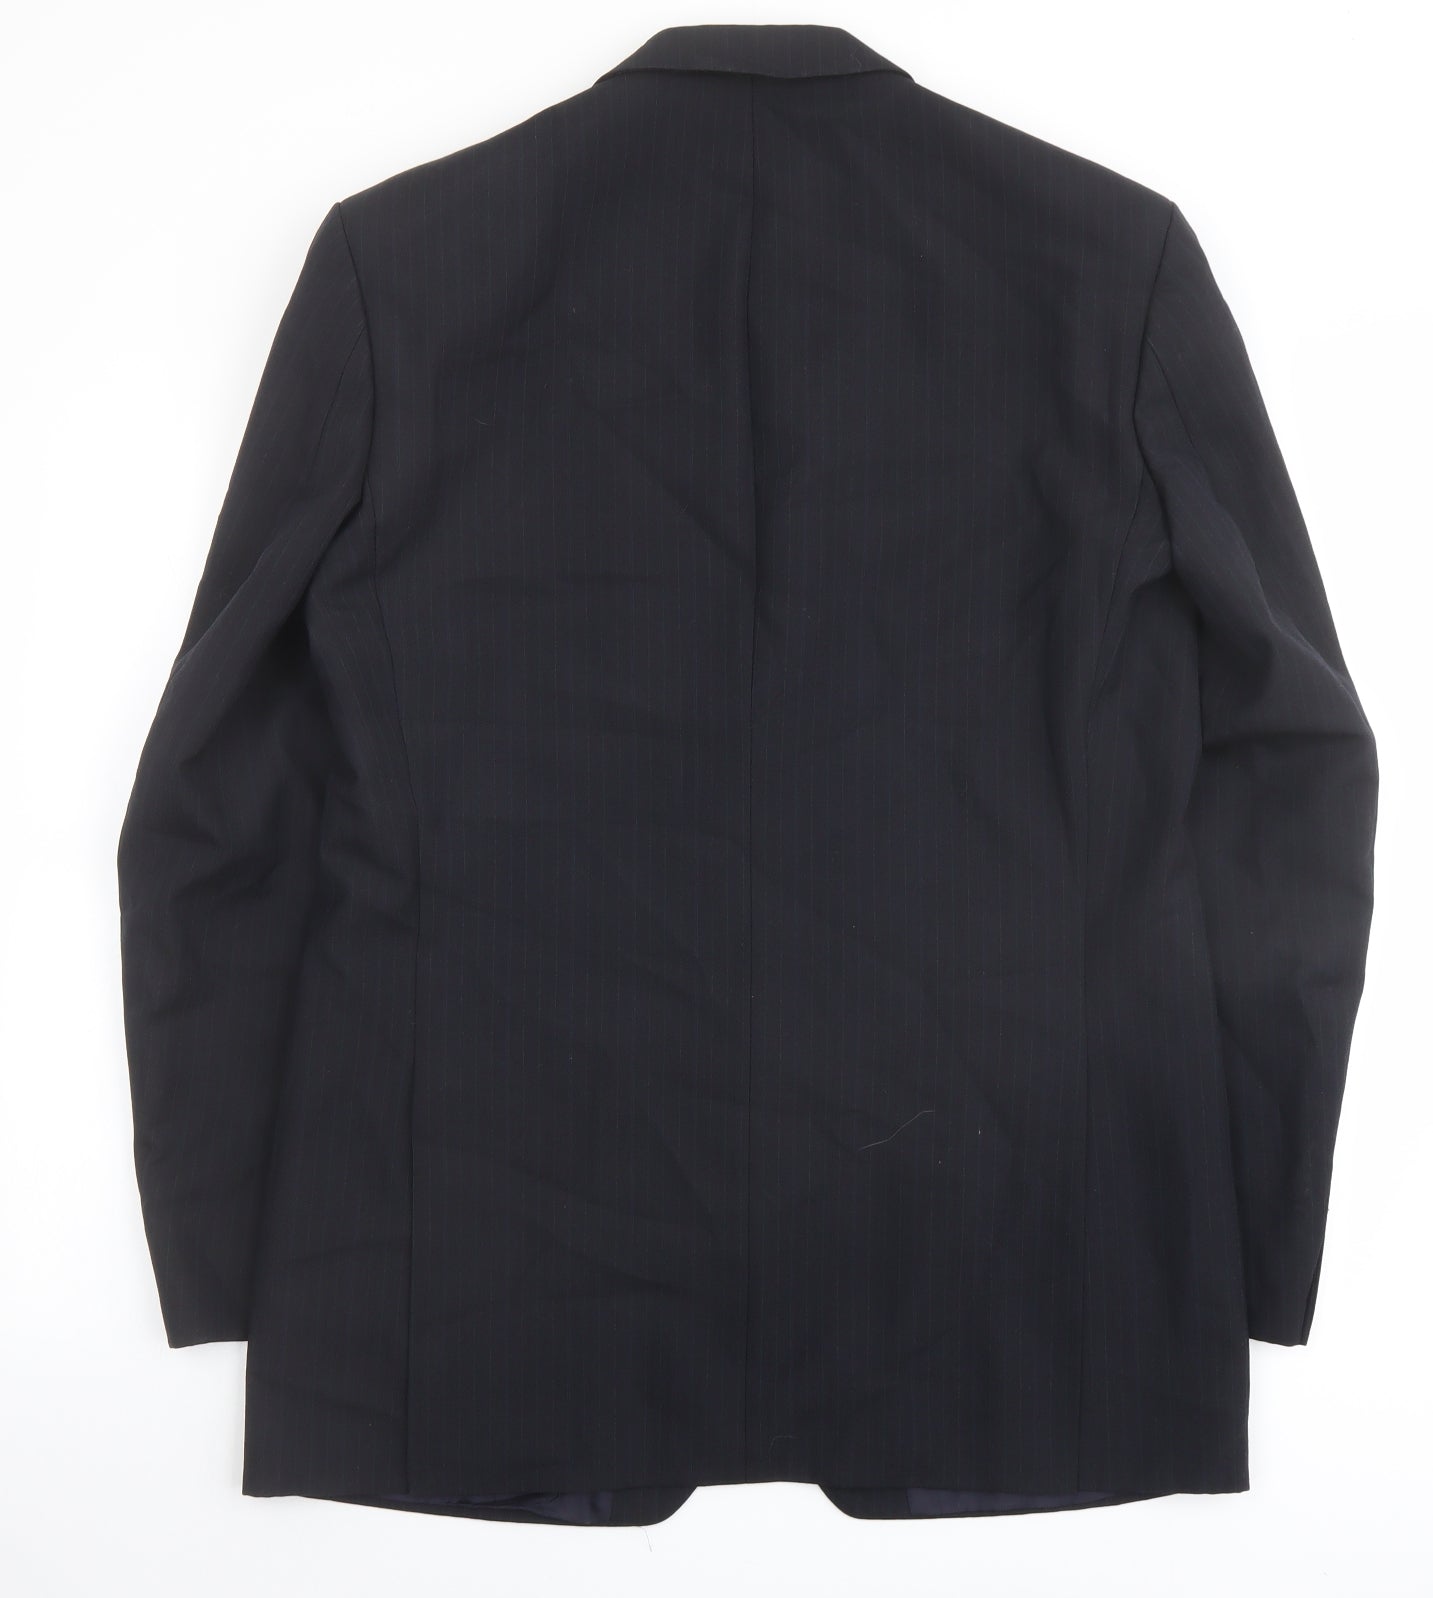 Marks and Spencer Mens Blue Striped Polyester Jacket Suit Jacket Size 40 Regular